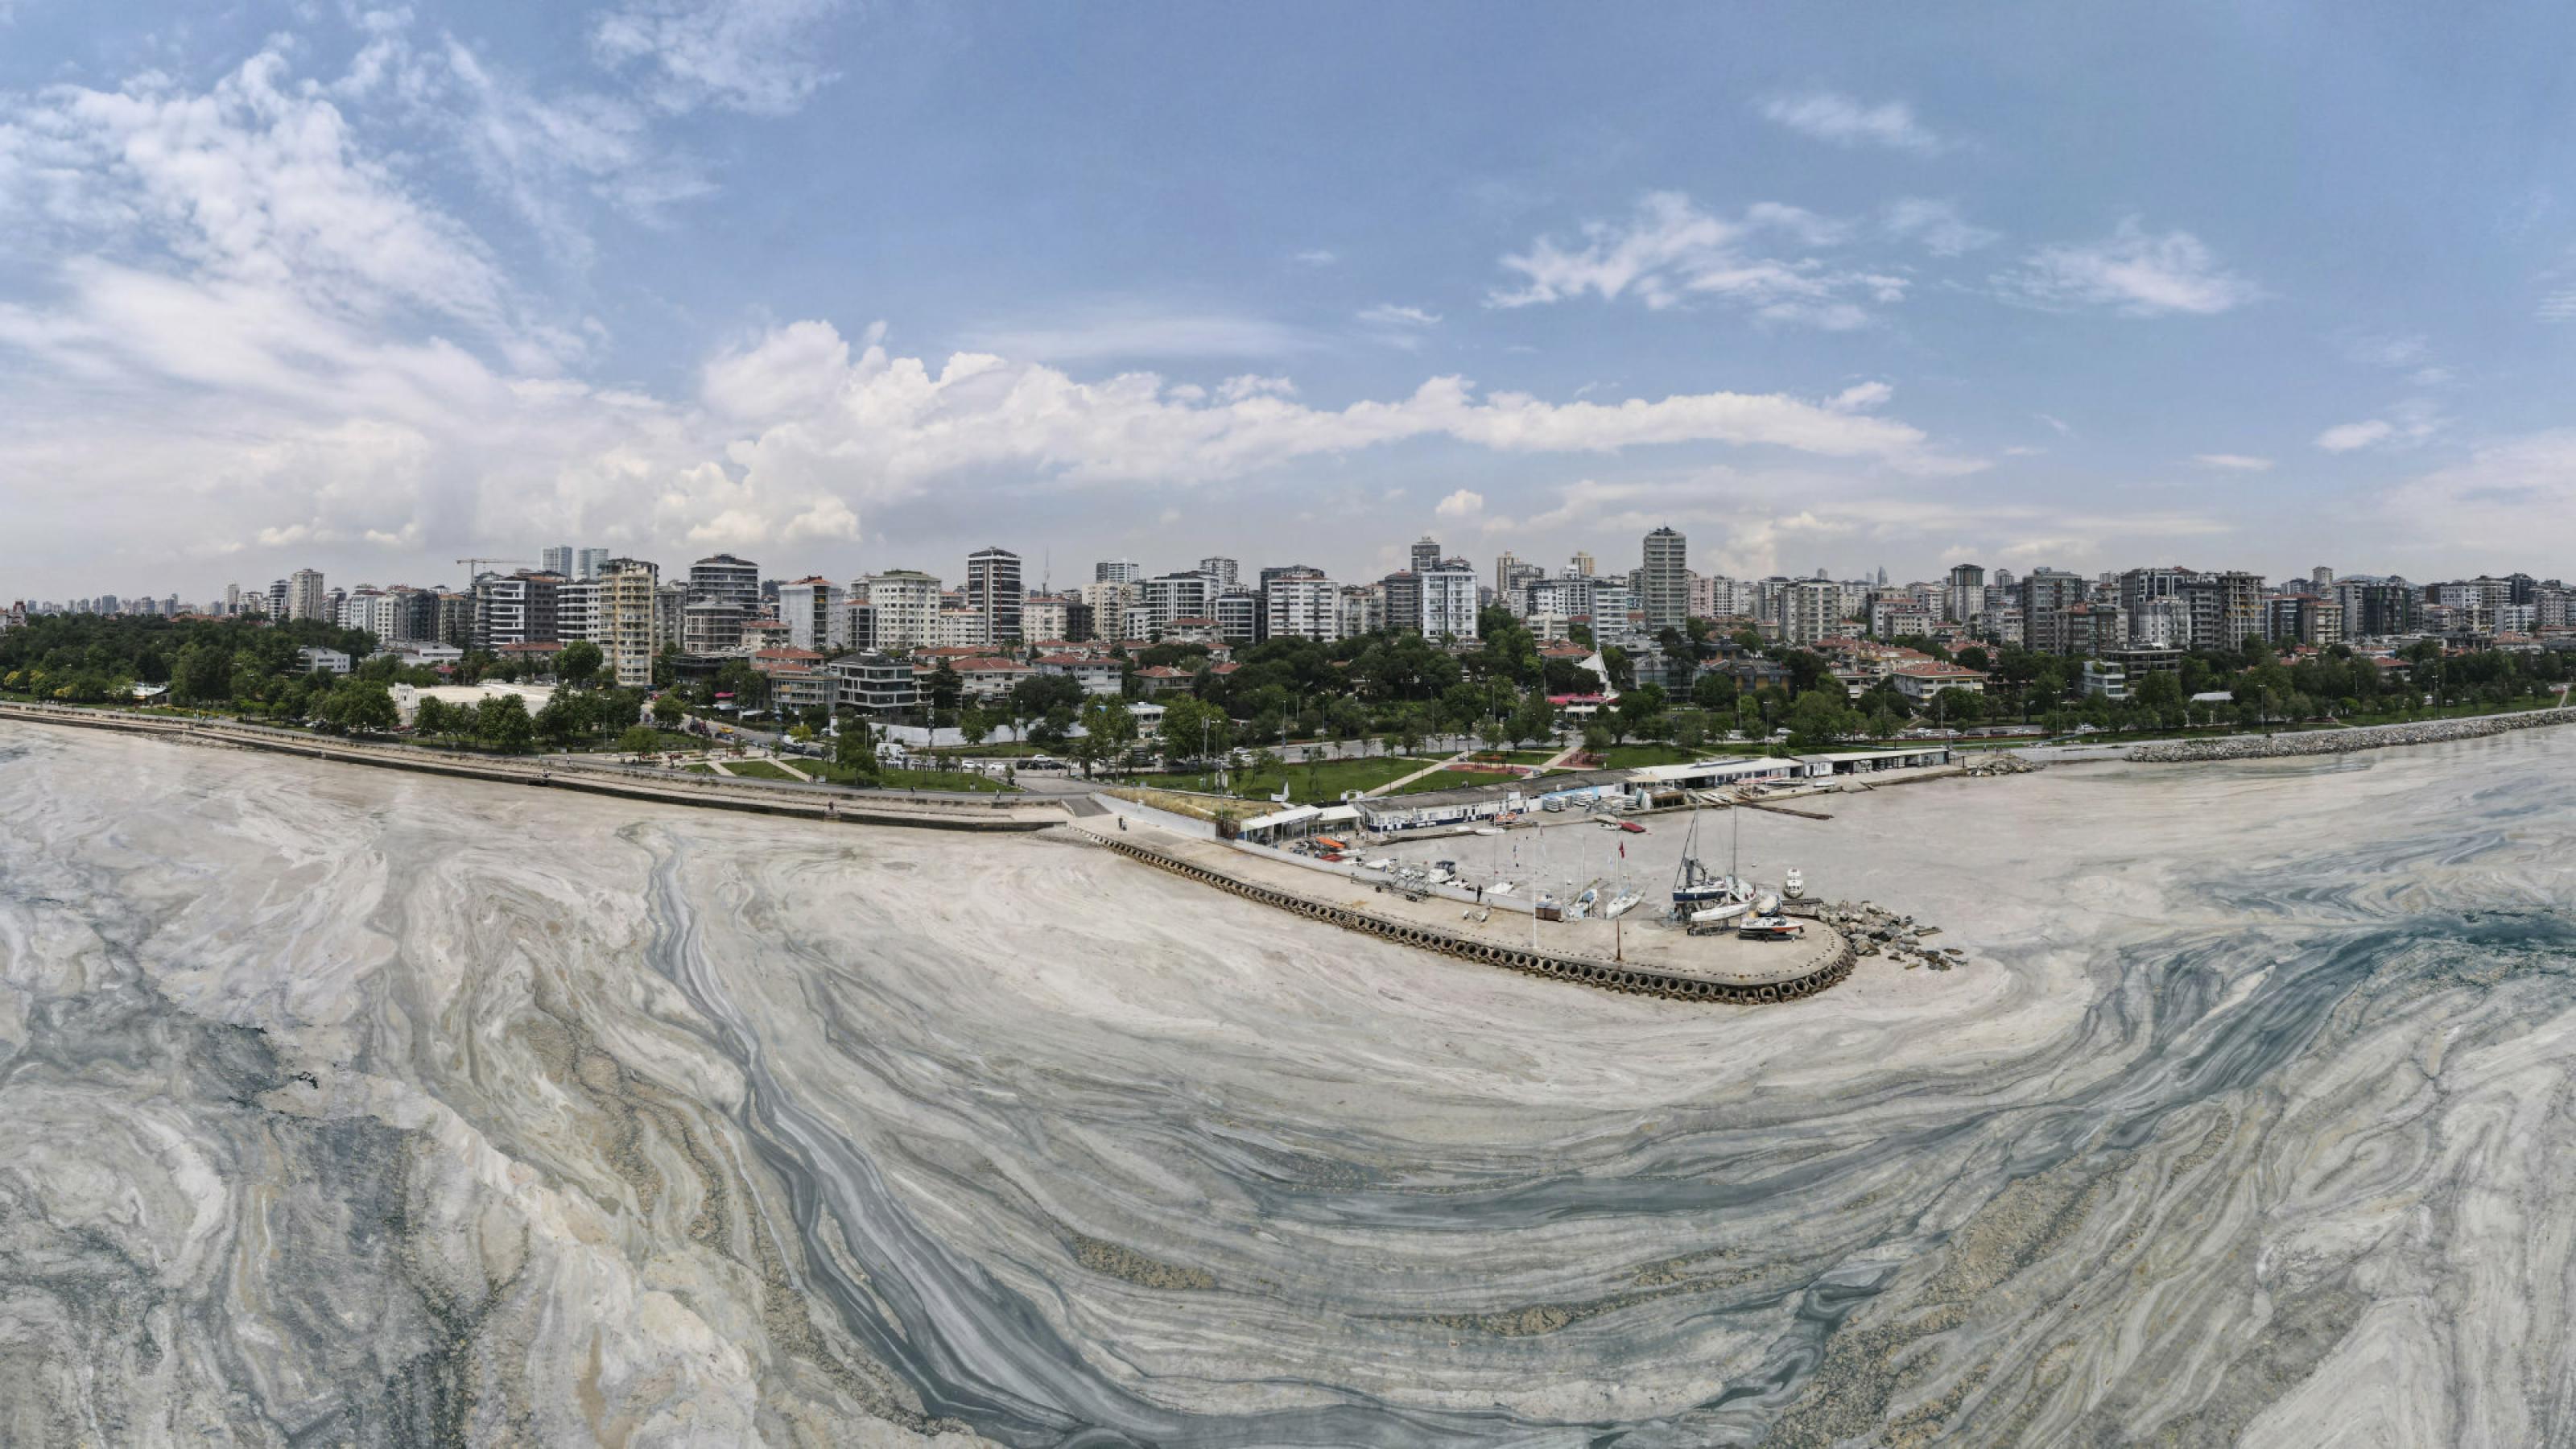 Luftbild der Küste vor dem Istanbuler Stadtteil Caddebostan, aufgenommen am 7. Juni 2021. Das Wasser ist weitflächig bedeckt mit hellen Schlieren aus Schleim.